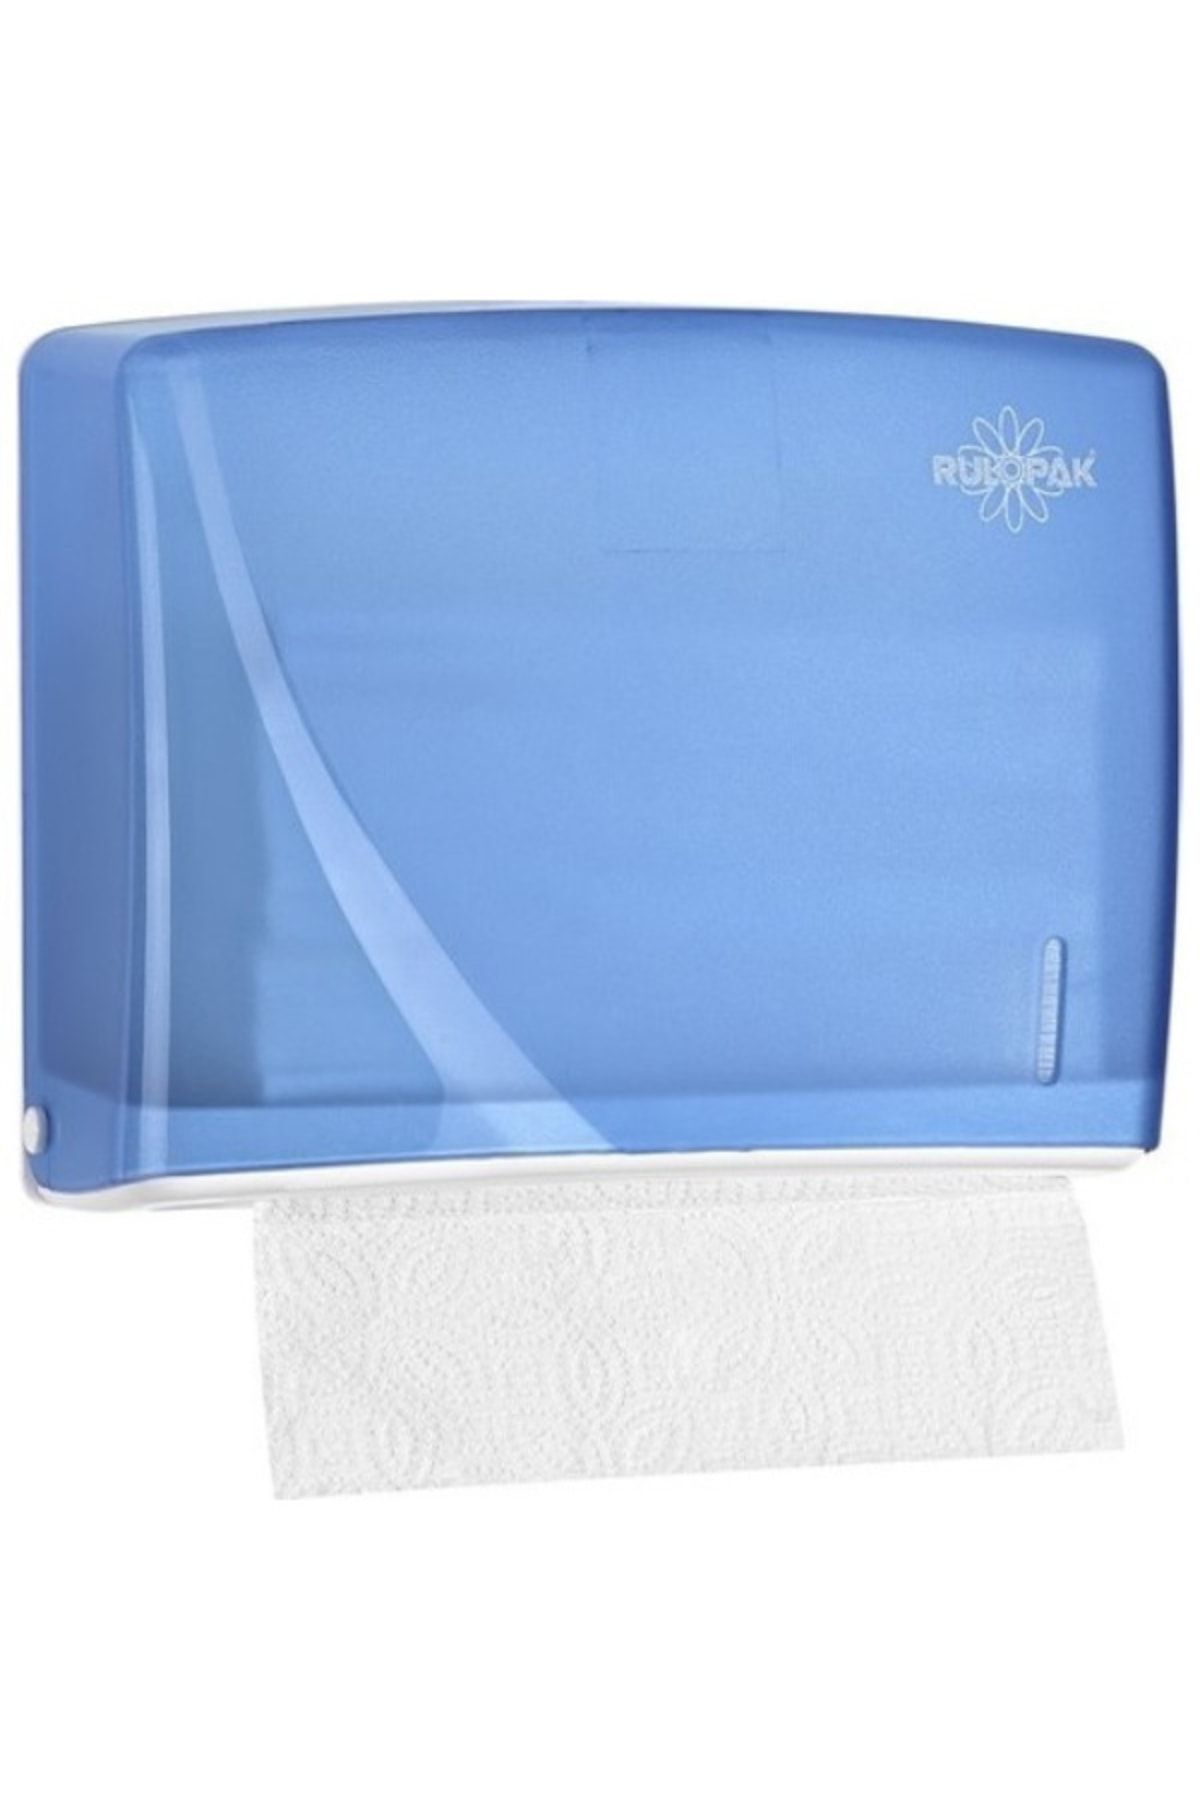 Rulopak Modern Z Katlı Kağıt Havlu Dispanseri 200'lü Transparan Mavi